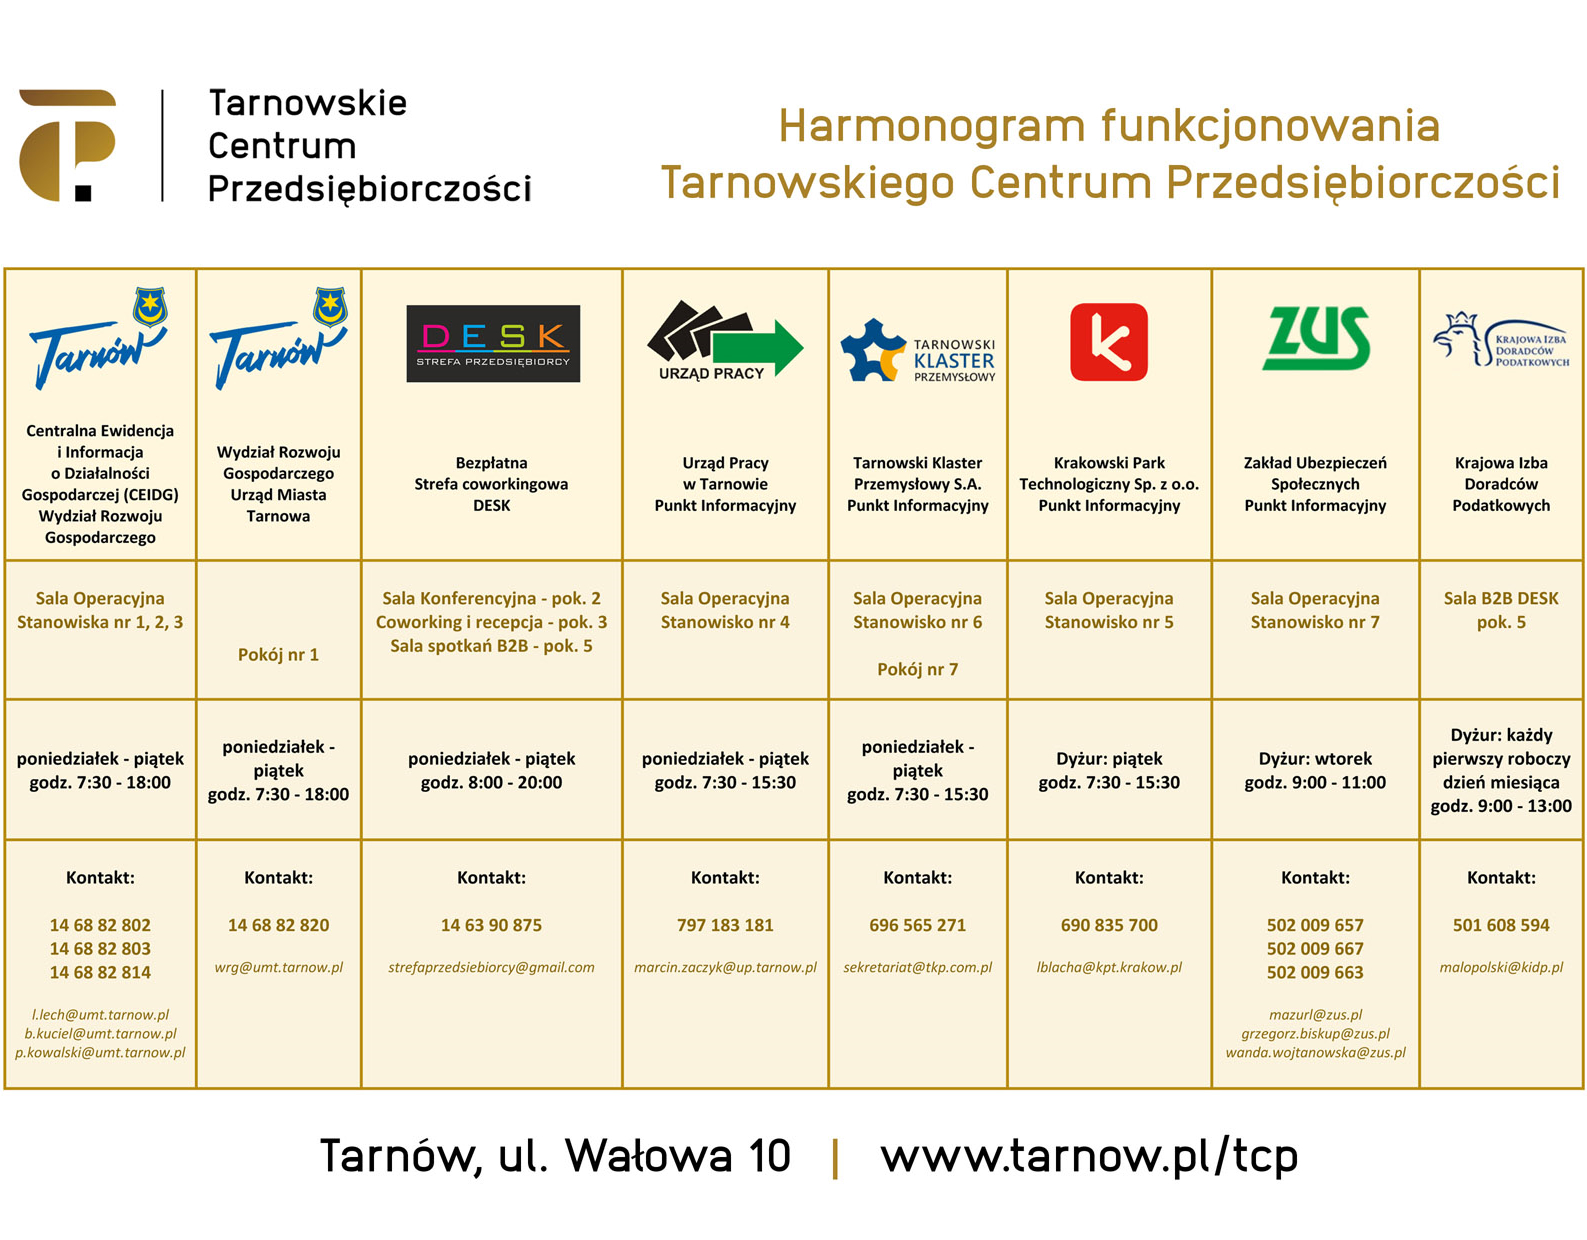 Harmonogram funkcjonowania Tarnowskiego Centrum Przedsiębiorczości